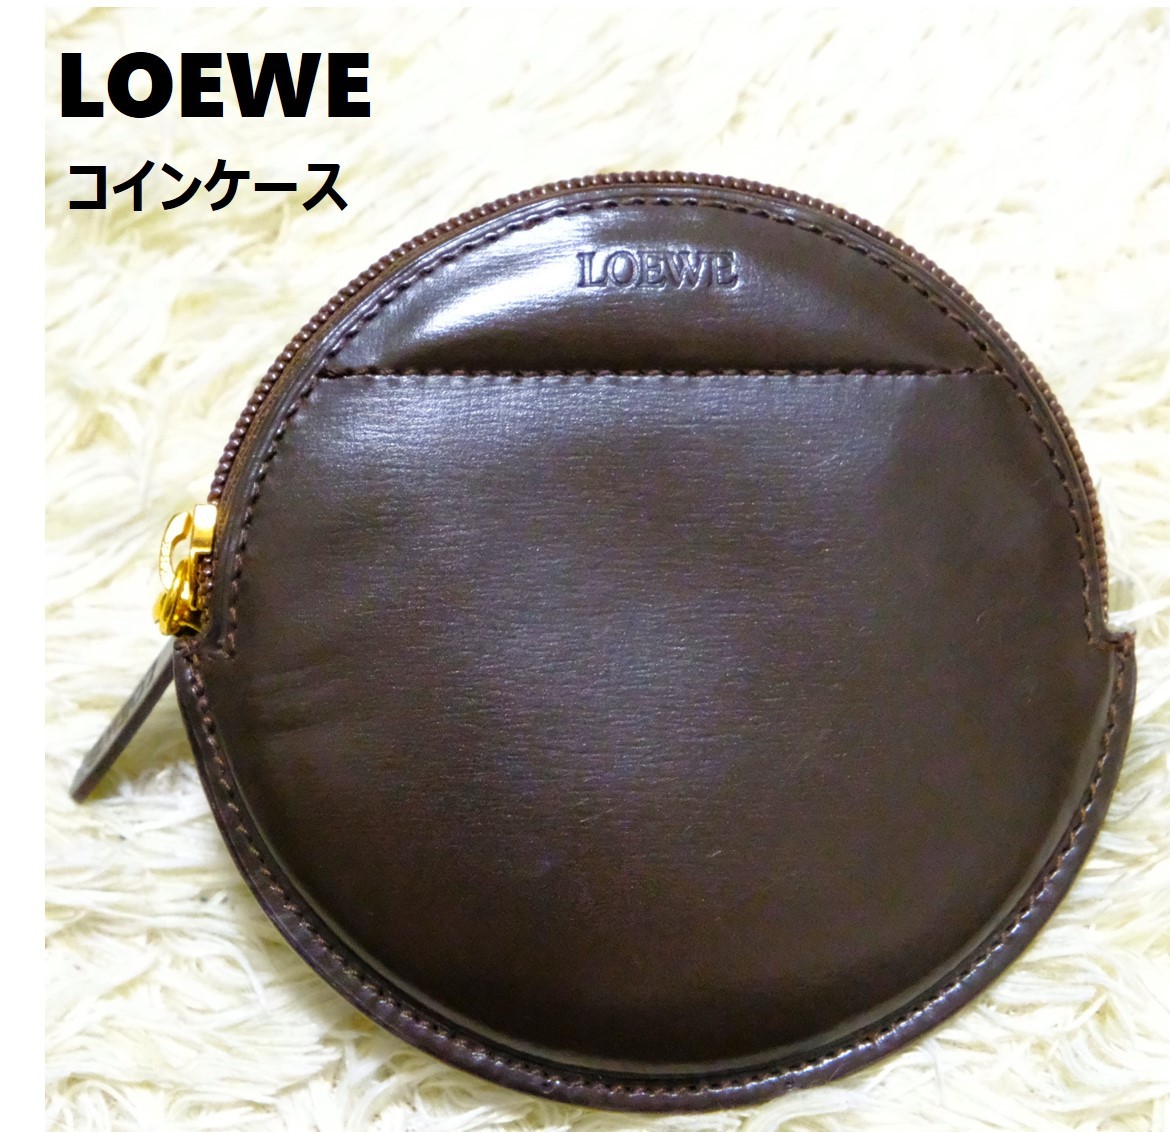 たしろ屋 新品未使用 LOEWE ロエベ コインケース 馬蹄型 ブラウン 金具